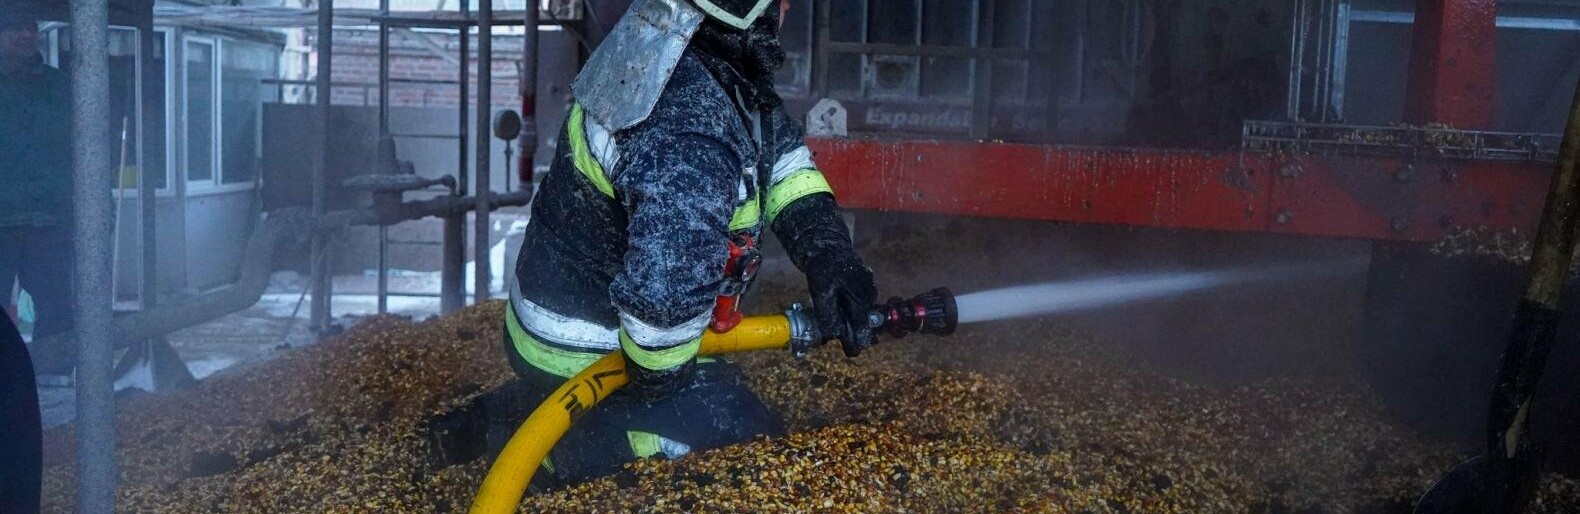 У Полтаві спалахнула зерносушарка: вогонь знищив тонну кукурудзи